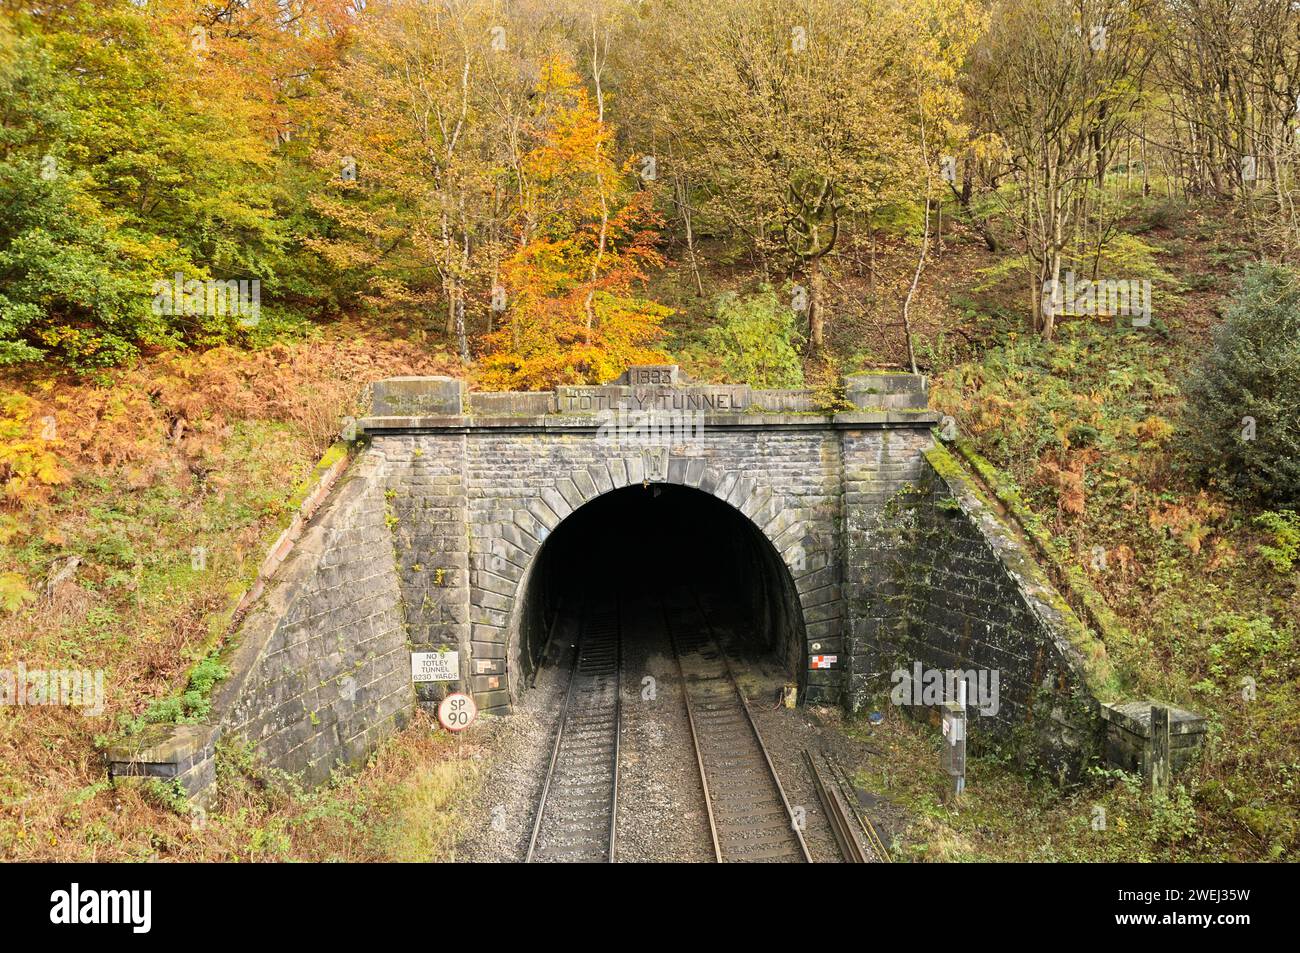 Die Mündung des Totley Tunnels ist von Herbstfarben umgeben und liegt in der Padley Gorge im Peak District, Derbyshire, England, Großbritannien. Eisenbahntunnelzug Tunnelzuggleise Stockfoto